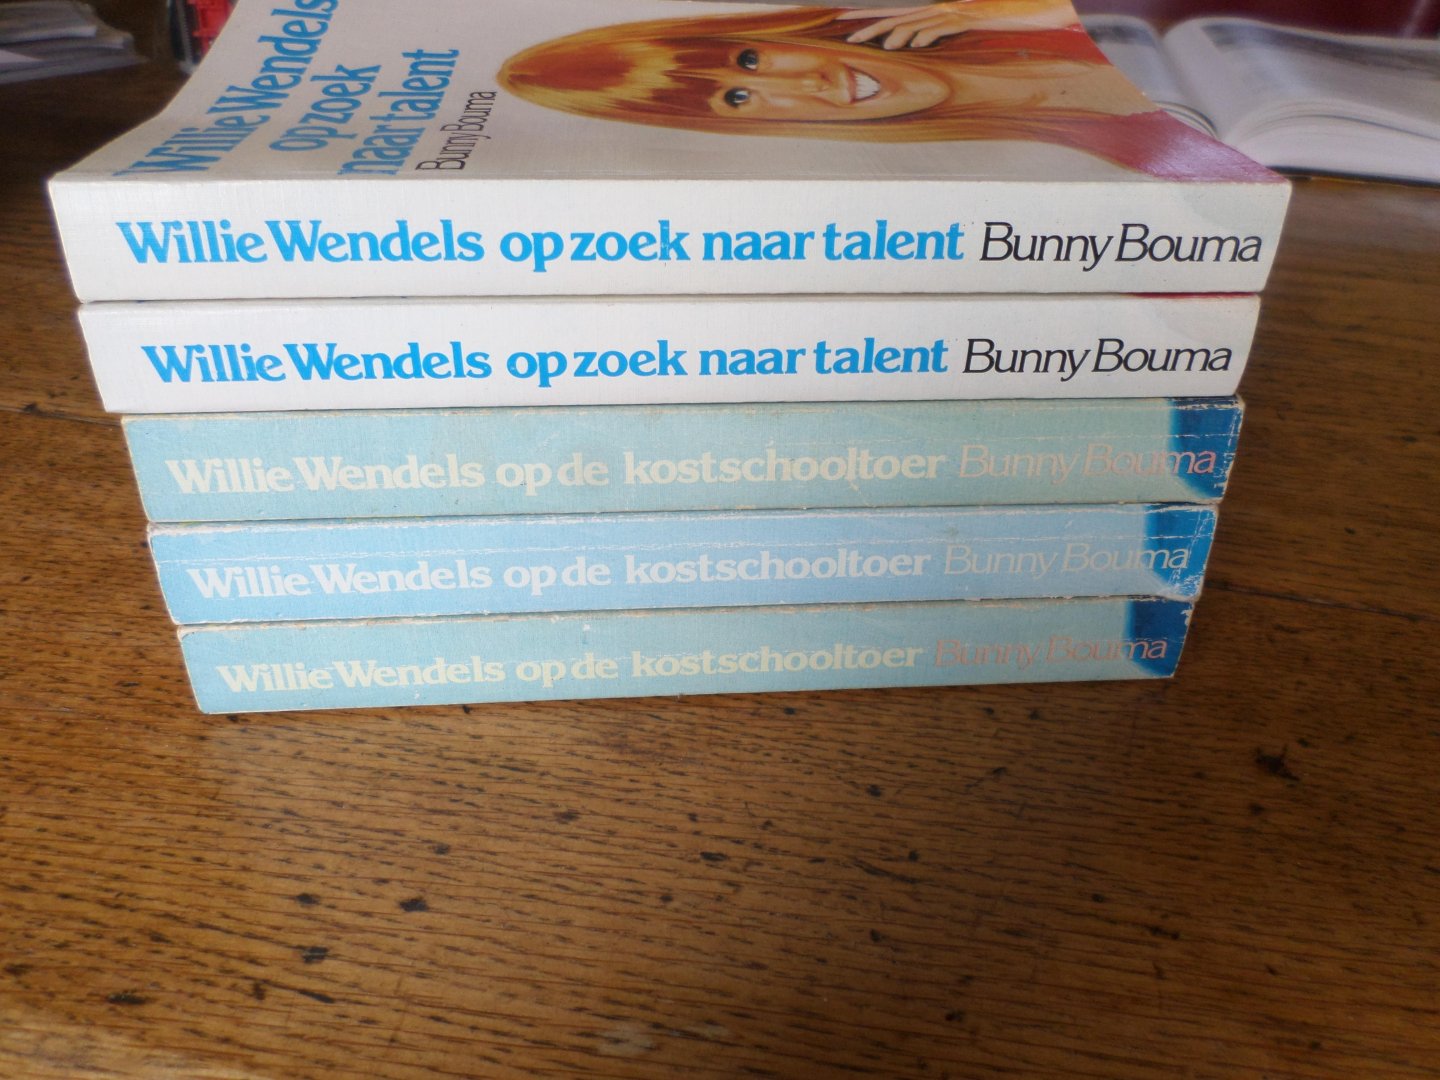 Bouma, Bunny - Wilie Wendels op de kostschooltoer / Willie Wendels op zoek naar talent